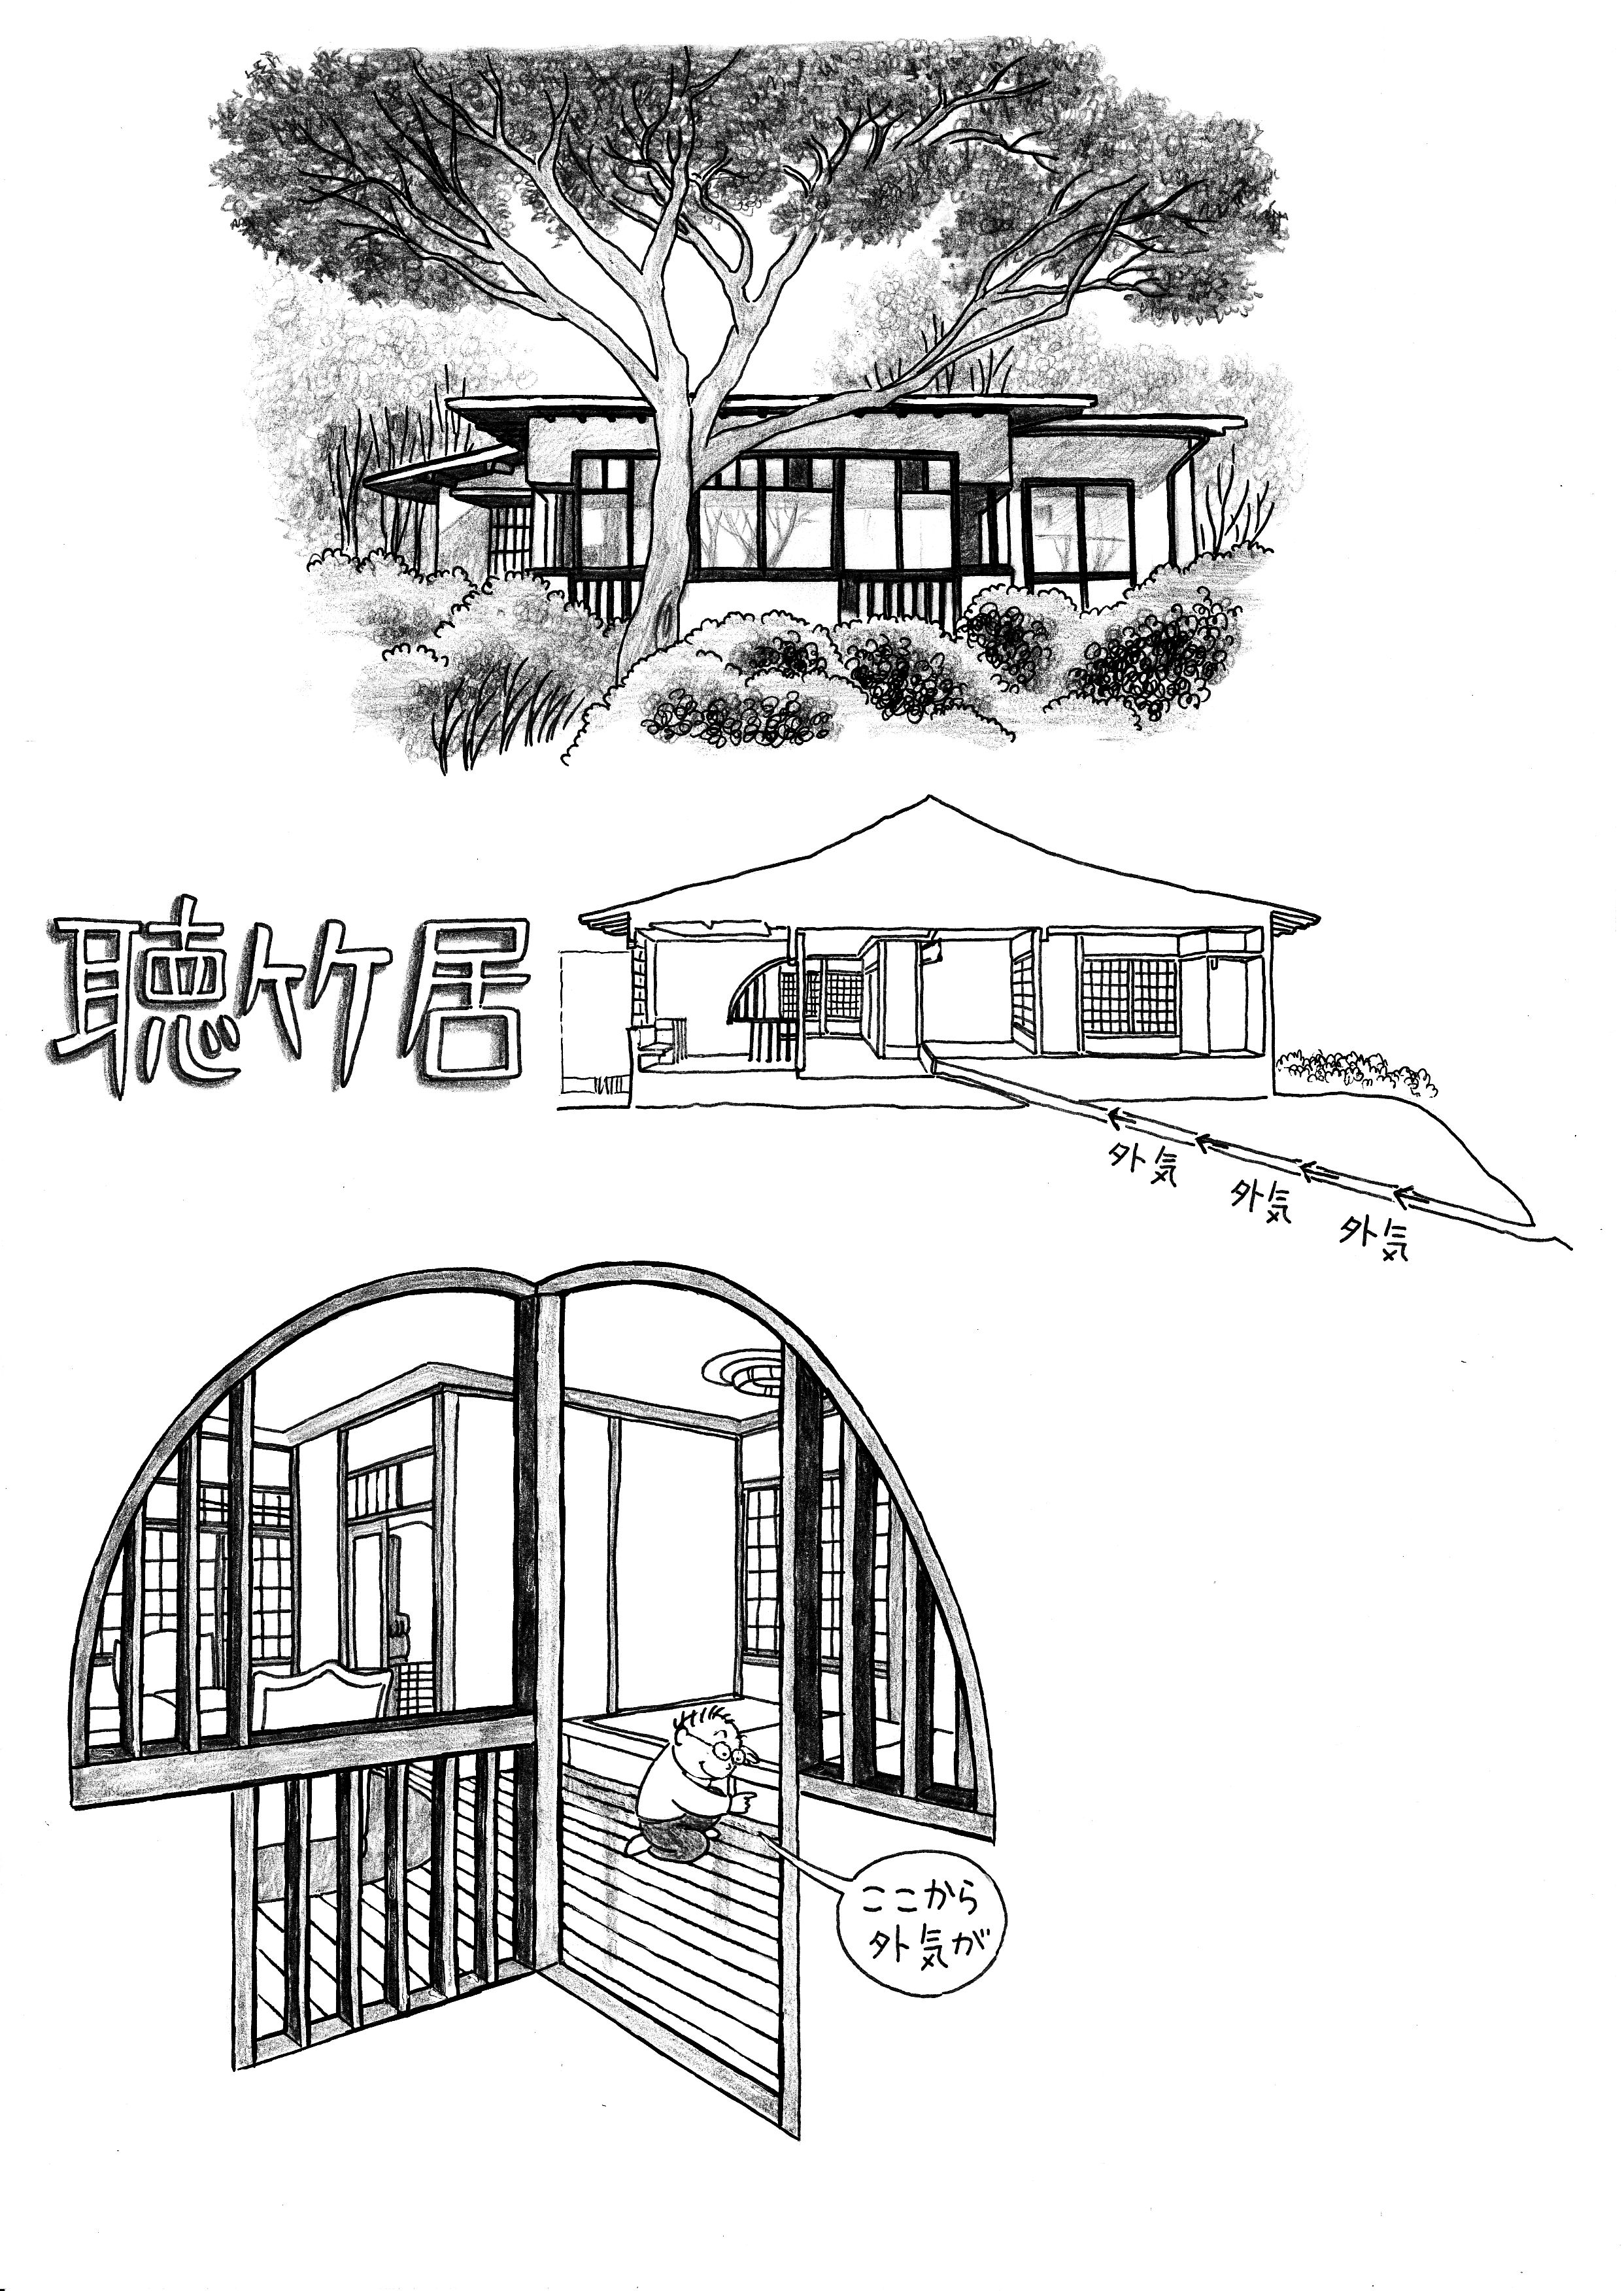 世界の名作住宅 想像の旅 聴竹居 シェフオオシマの住宅雑記帳 楽天ブログ